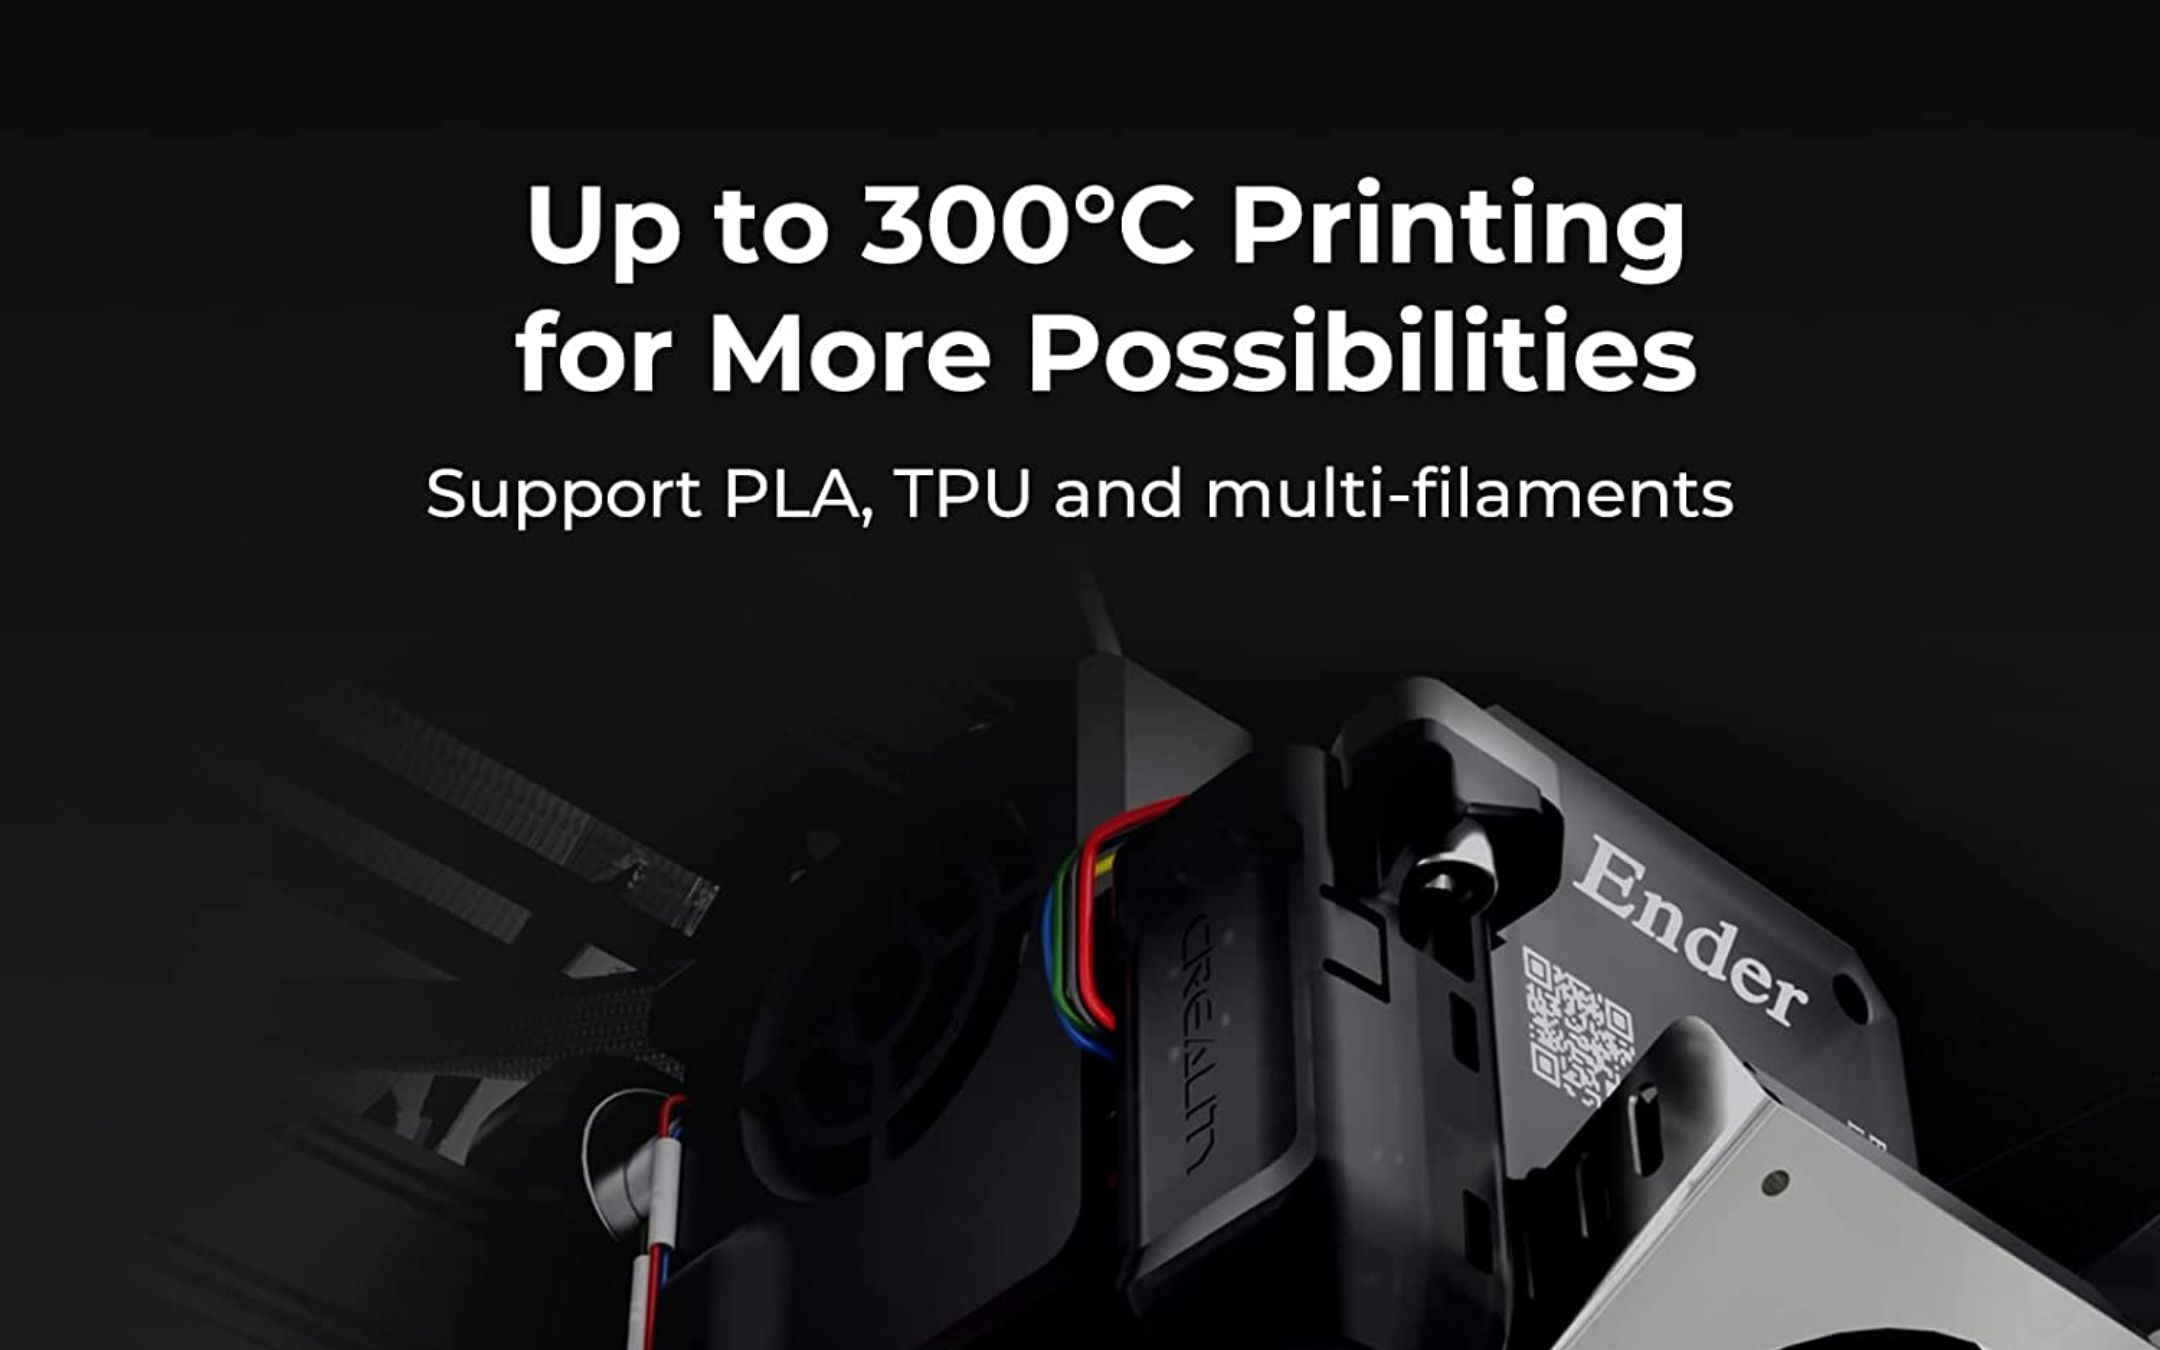 Le migliori stampanti 3D economiche - Stampa 3d Facile